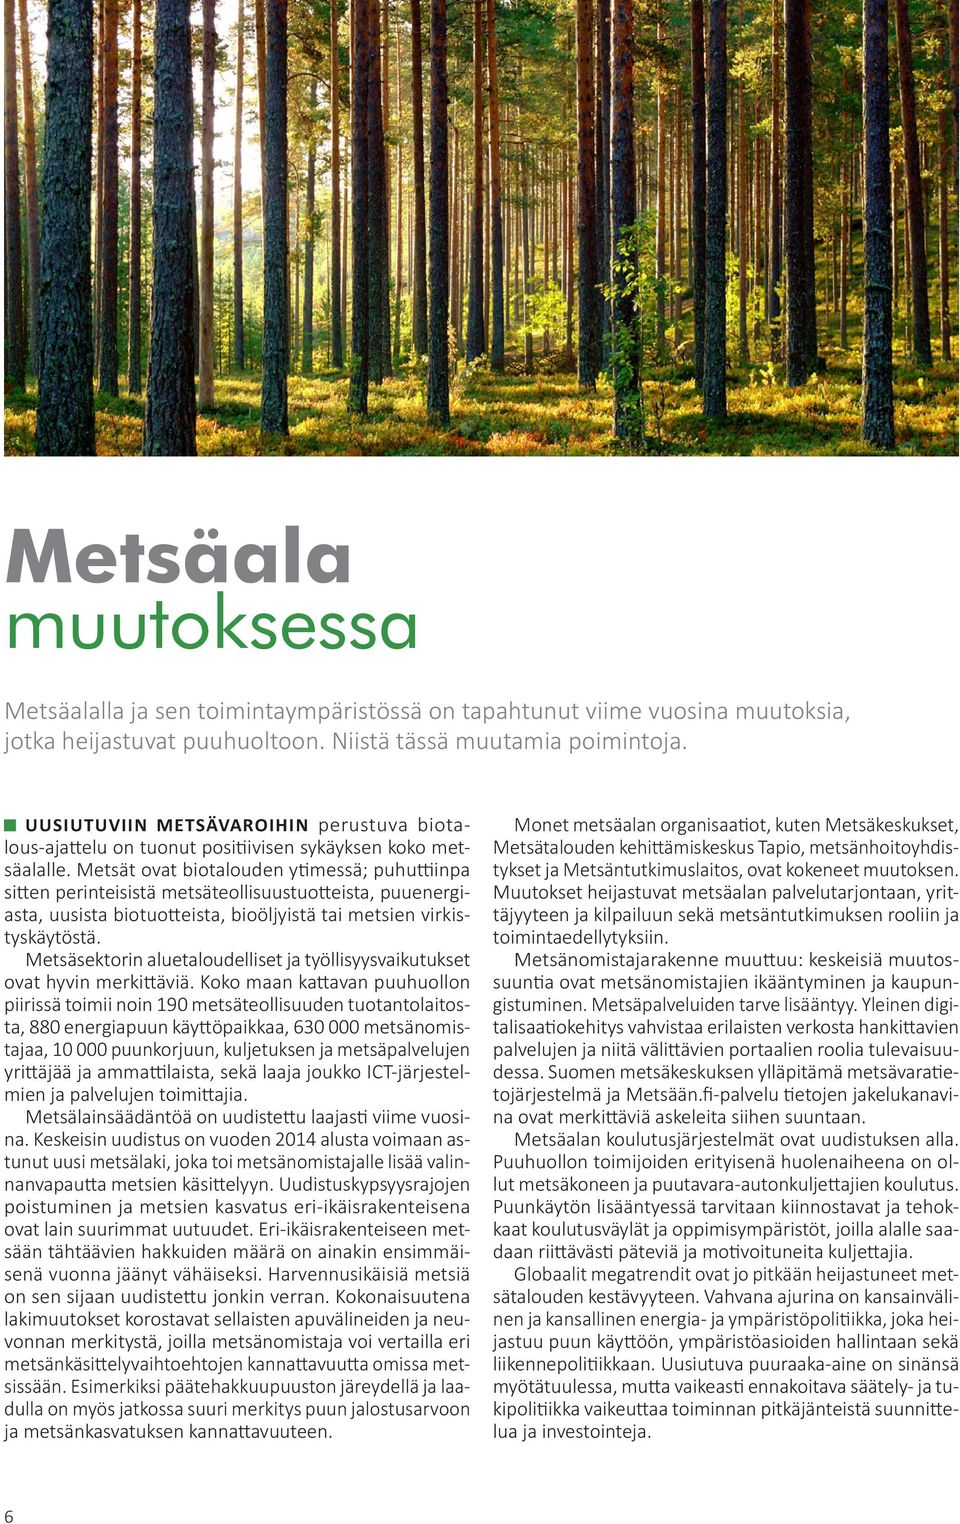 Metsät ovat biotalouden ytimessä; puhuttiinpa sitten perinteisistä metsäteollisuustuotteista, puuenergiasta, uusista biotuotteista, bioöljyistä tai metsien virkistyskäytöstä.